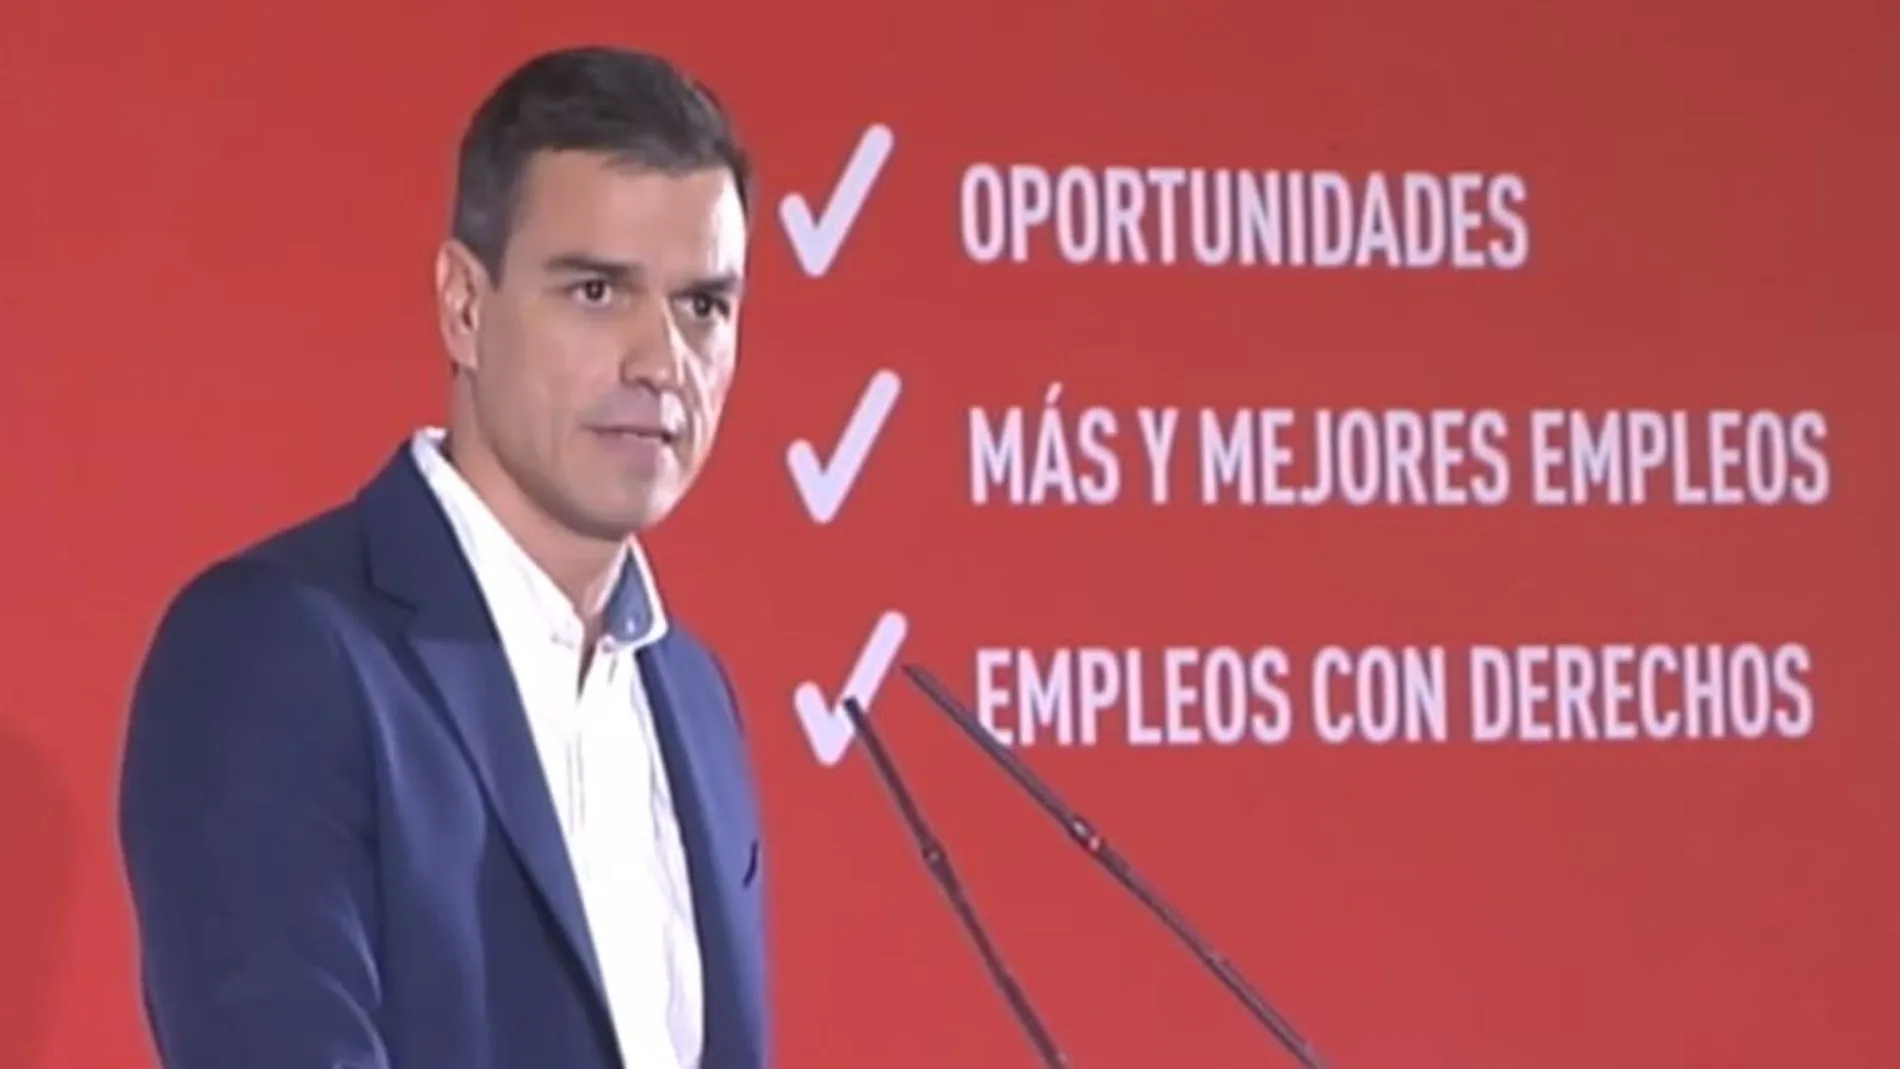 El PSOE mantiene los despidos baratos en su programa electoral